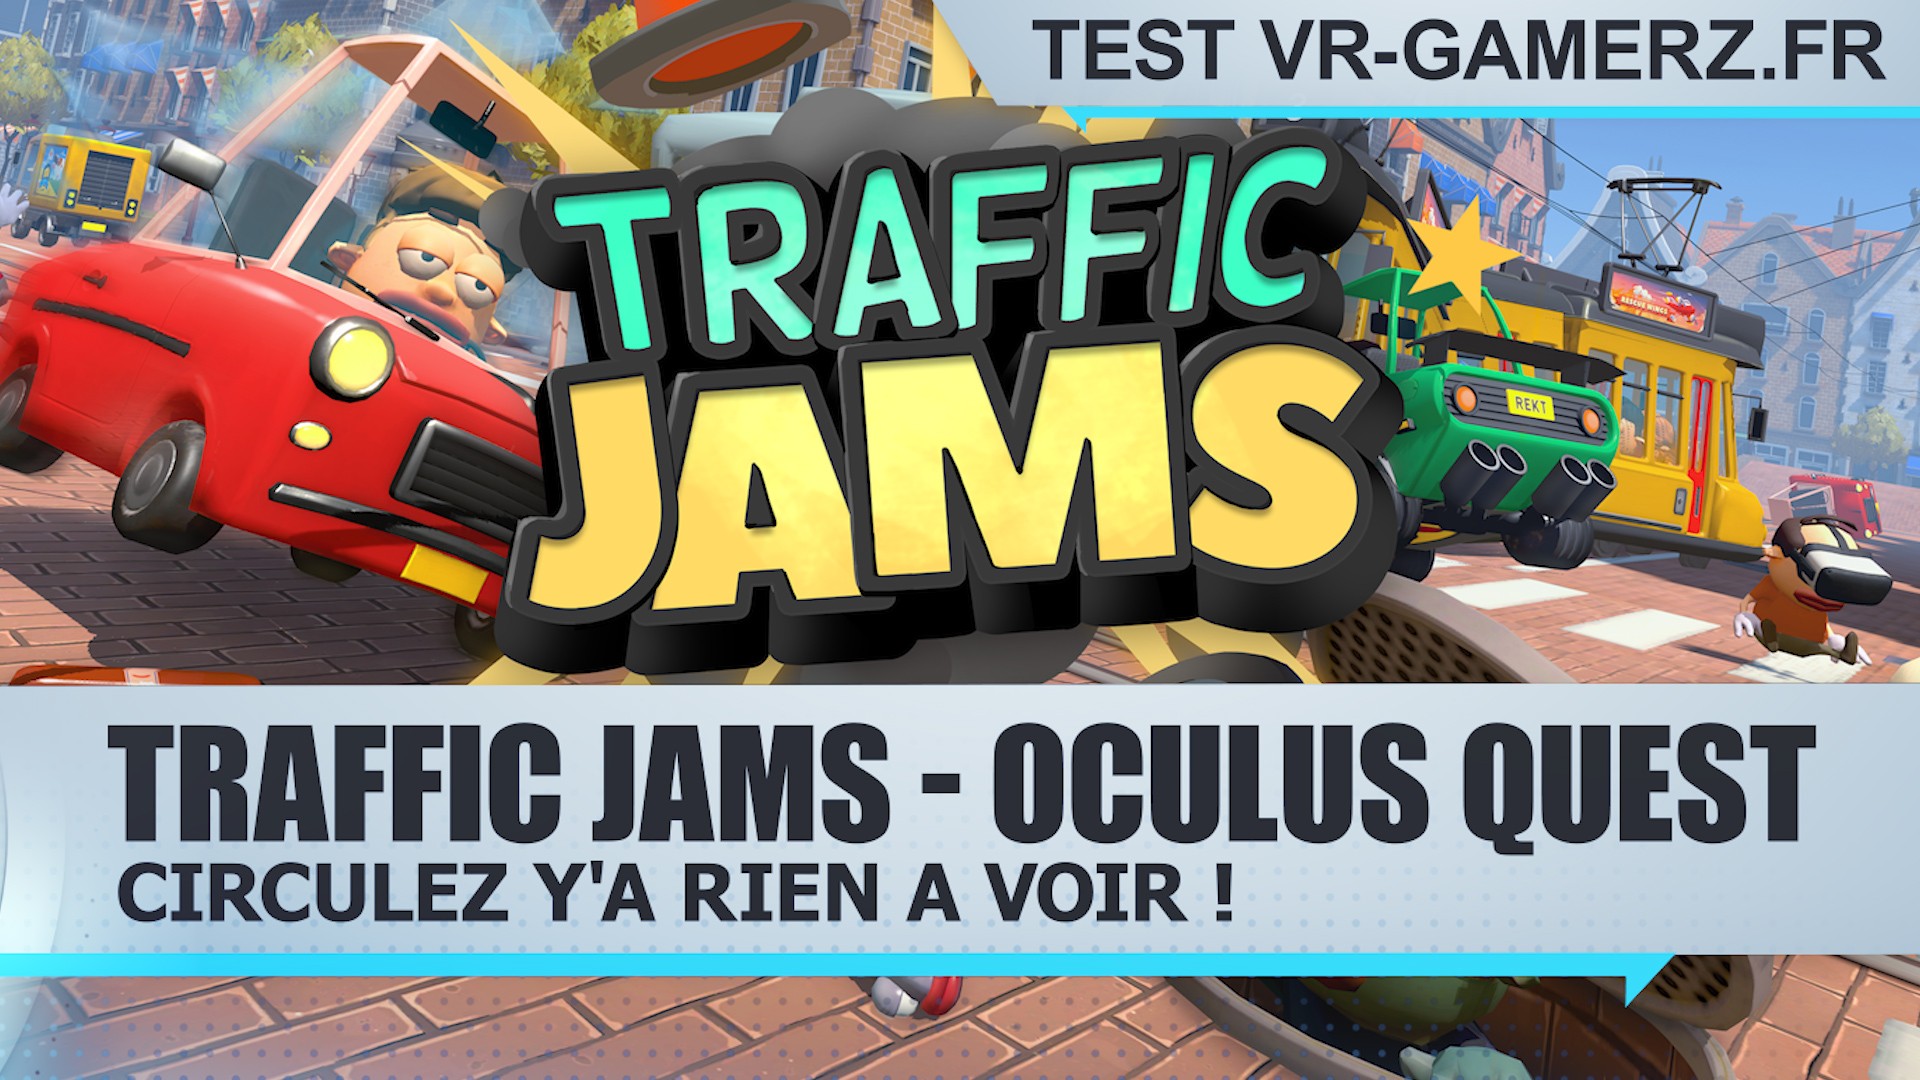 Test Traffic jams Oculus quest : Circulez y’a rien à voir !